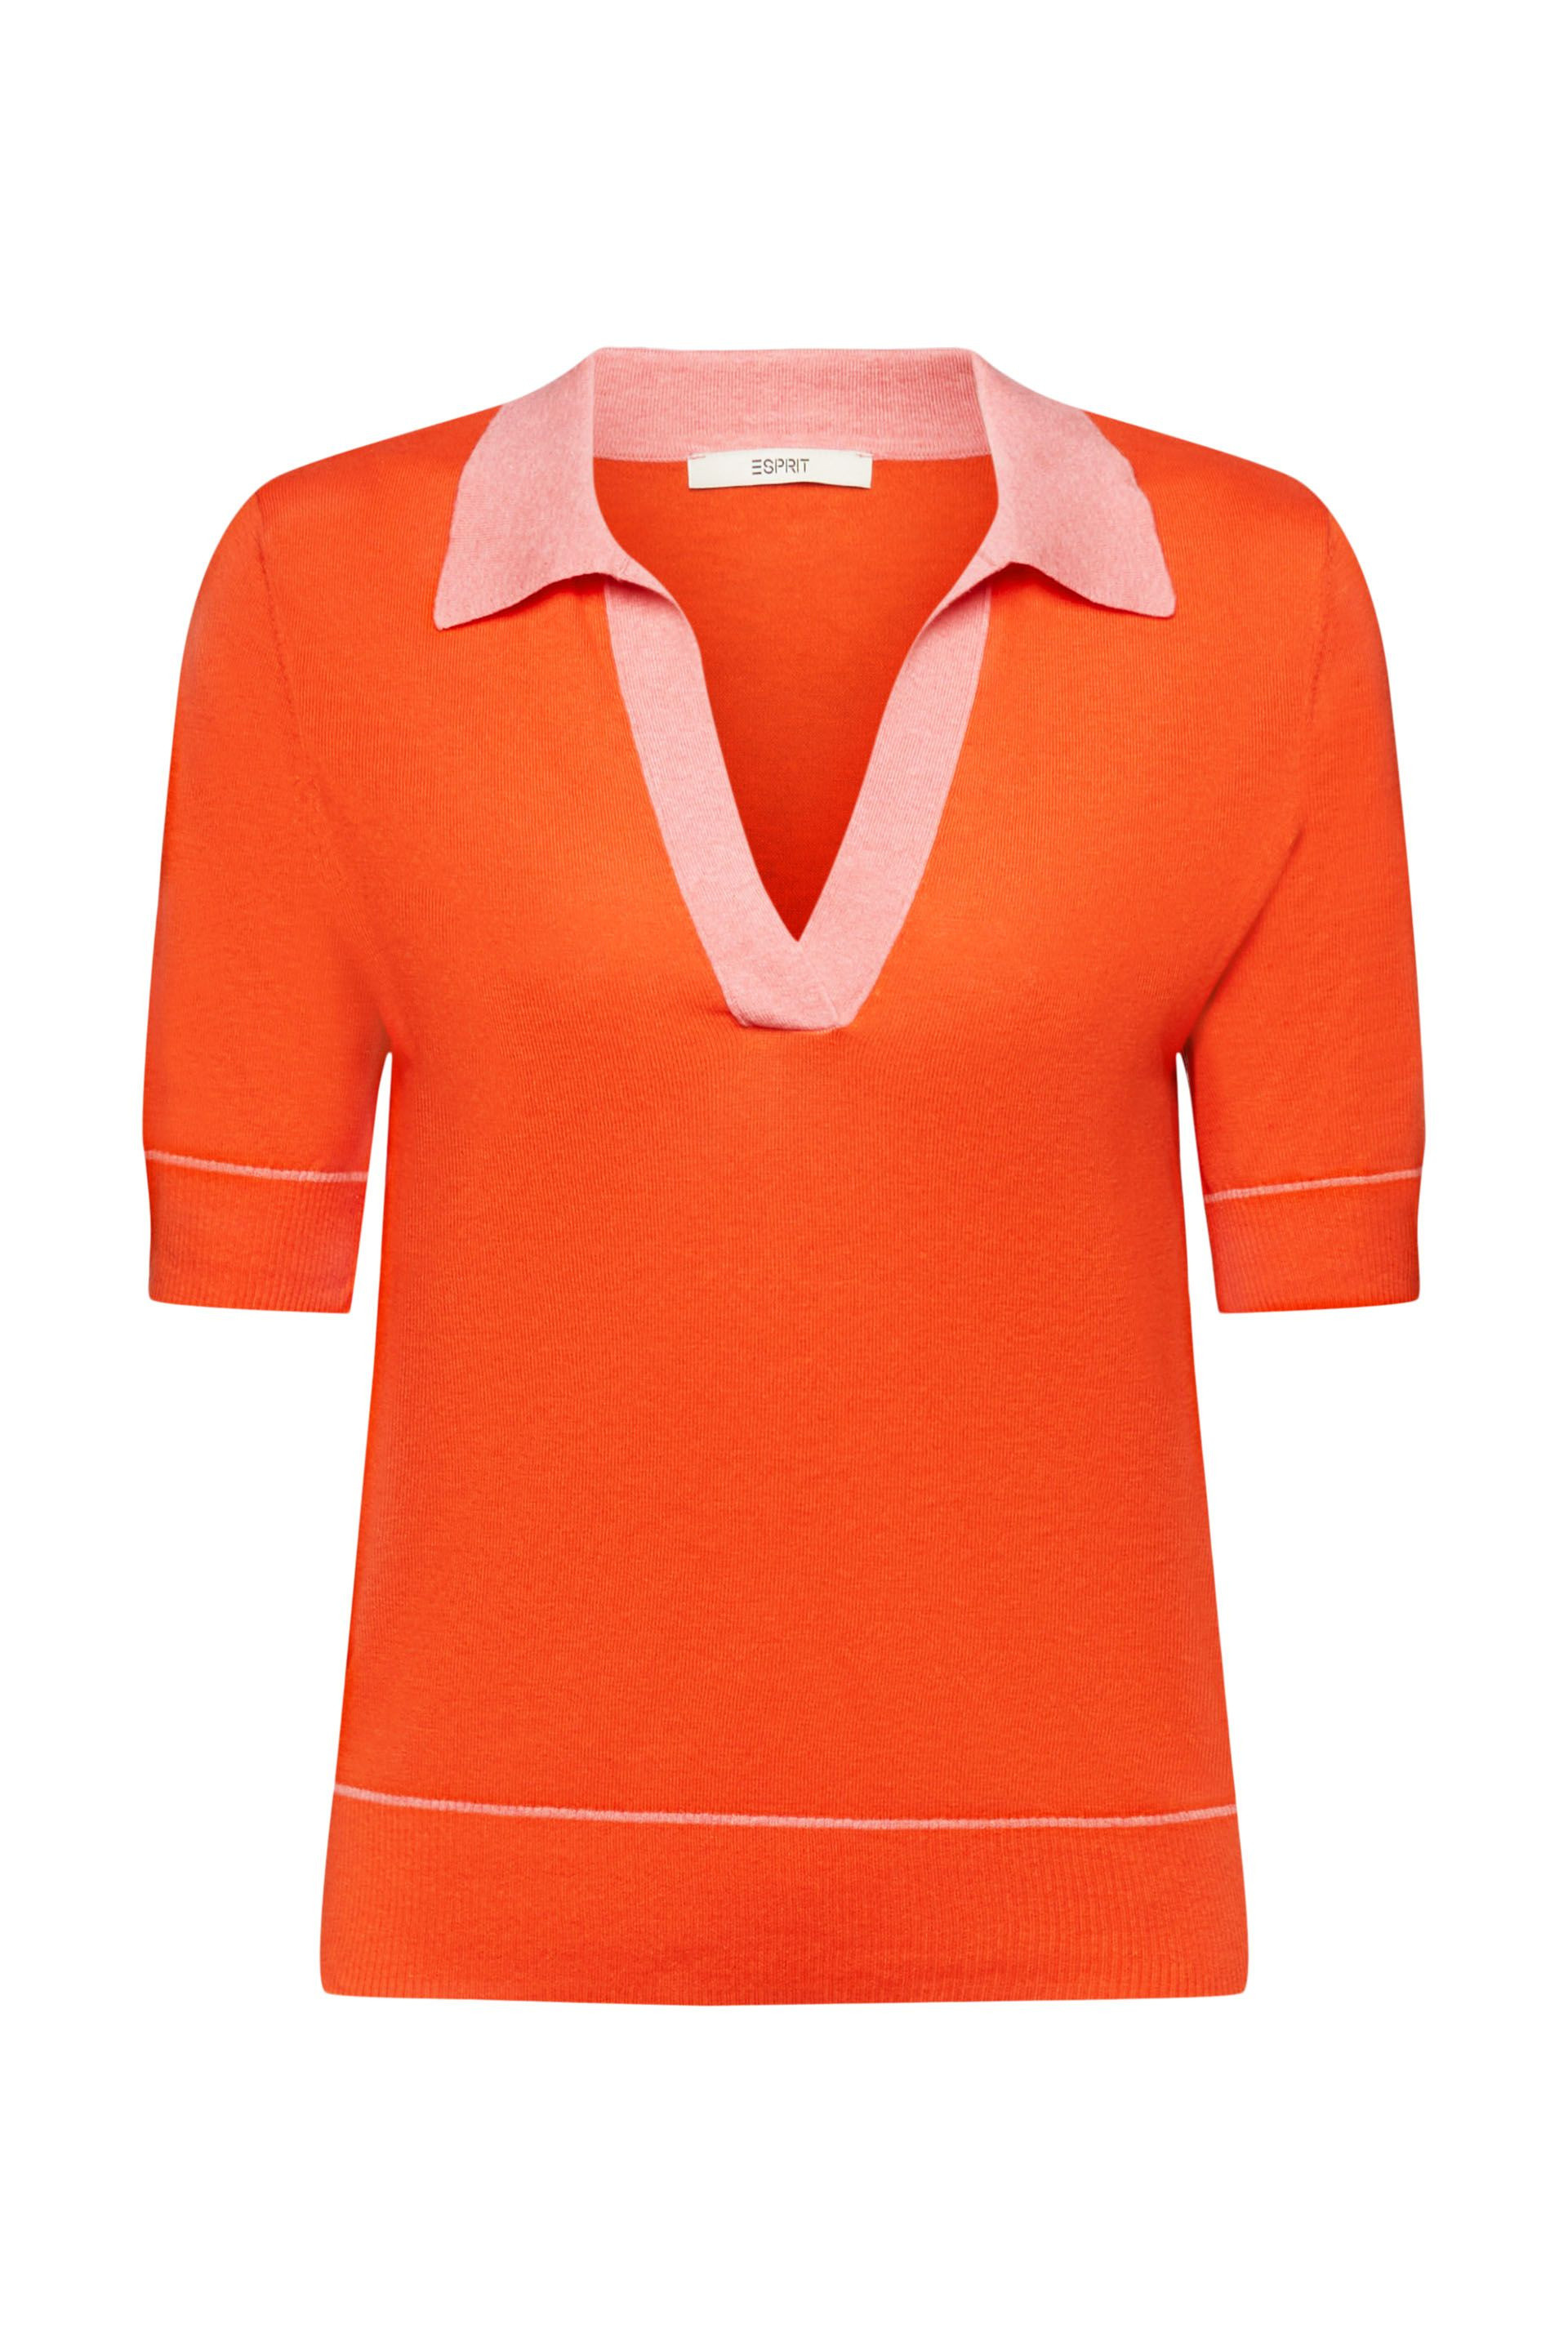 Esprit - V-neck pullover, Orange, large image number 0